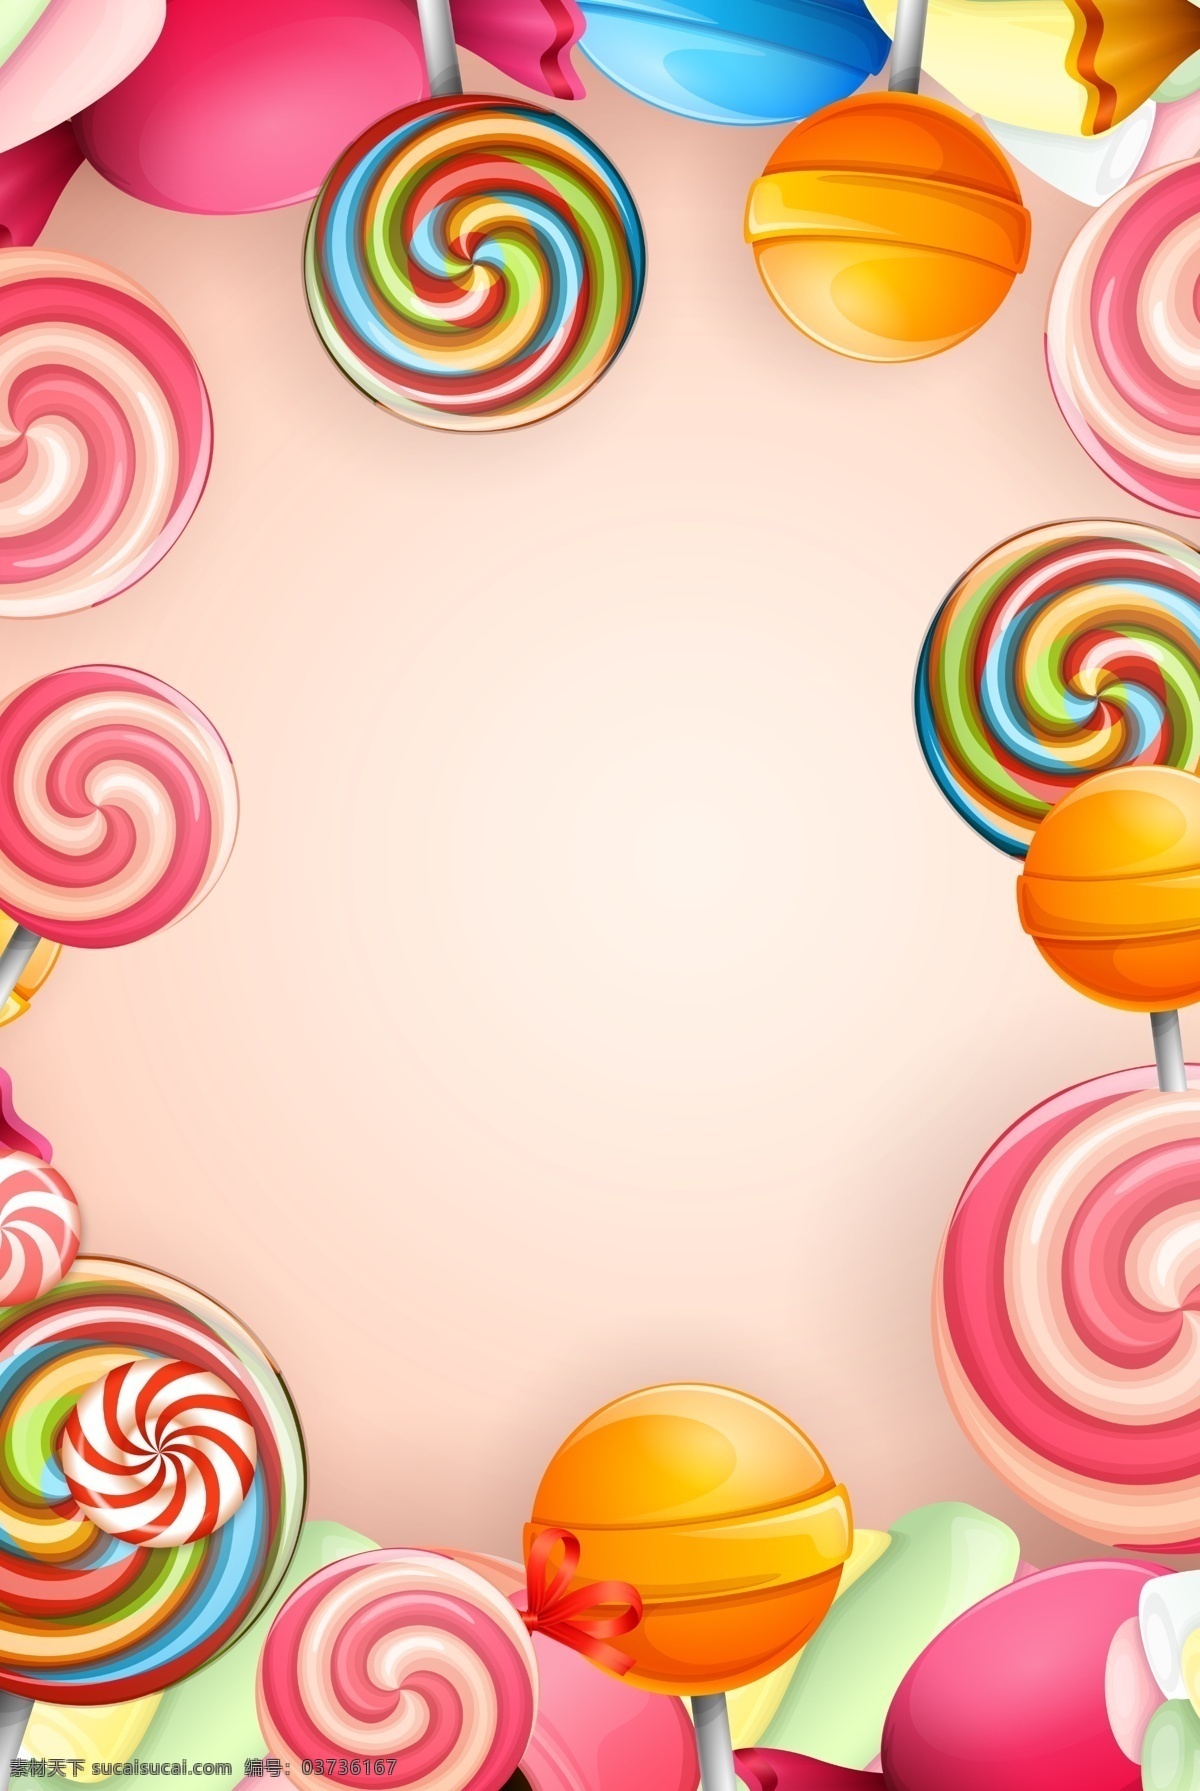 彩色 棒棒糖 新品 海报 背景 可爱 美味 背景素材 美食背景 小清新 糖果色 彩色糖果 七色糖 糖果背景图 粉色 少女心